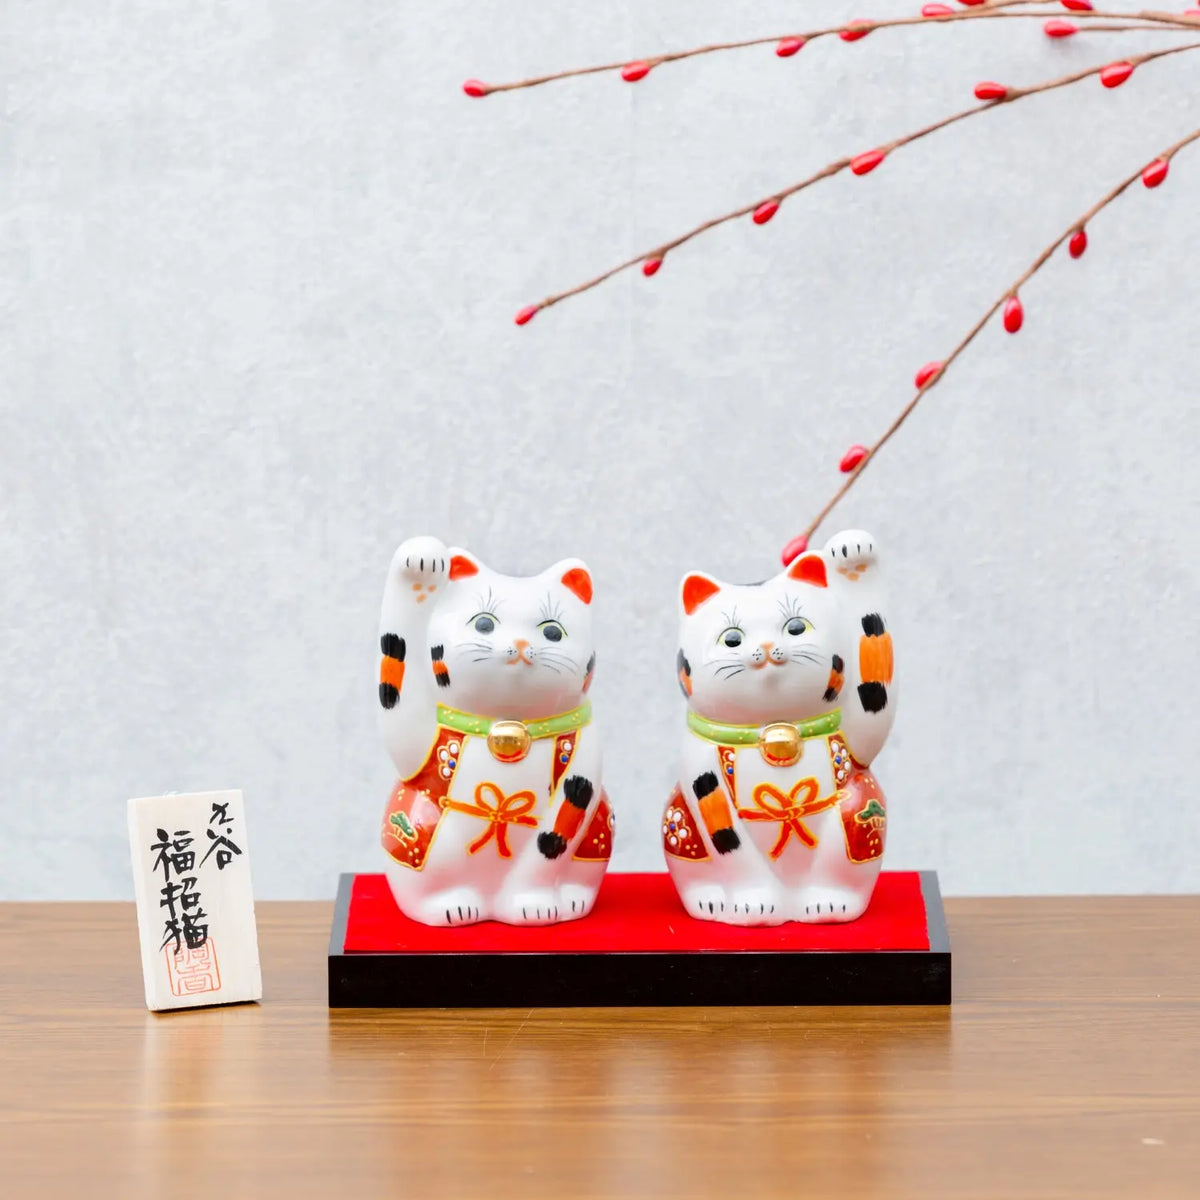 Kutani Ware Porcelain Maneki Neko Pair Figurine 3.5-Go